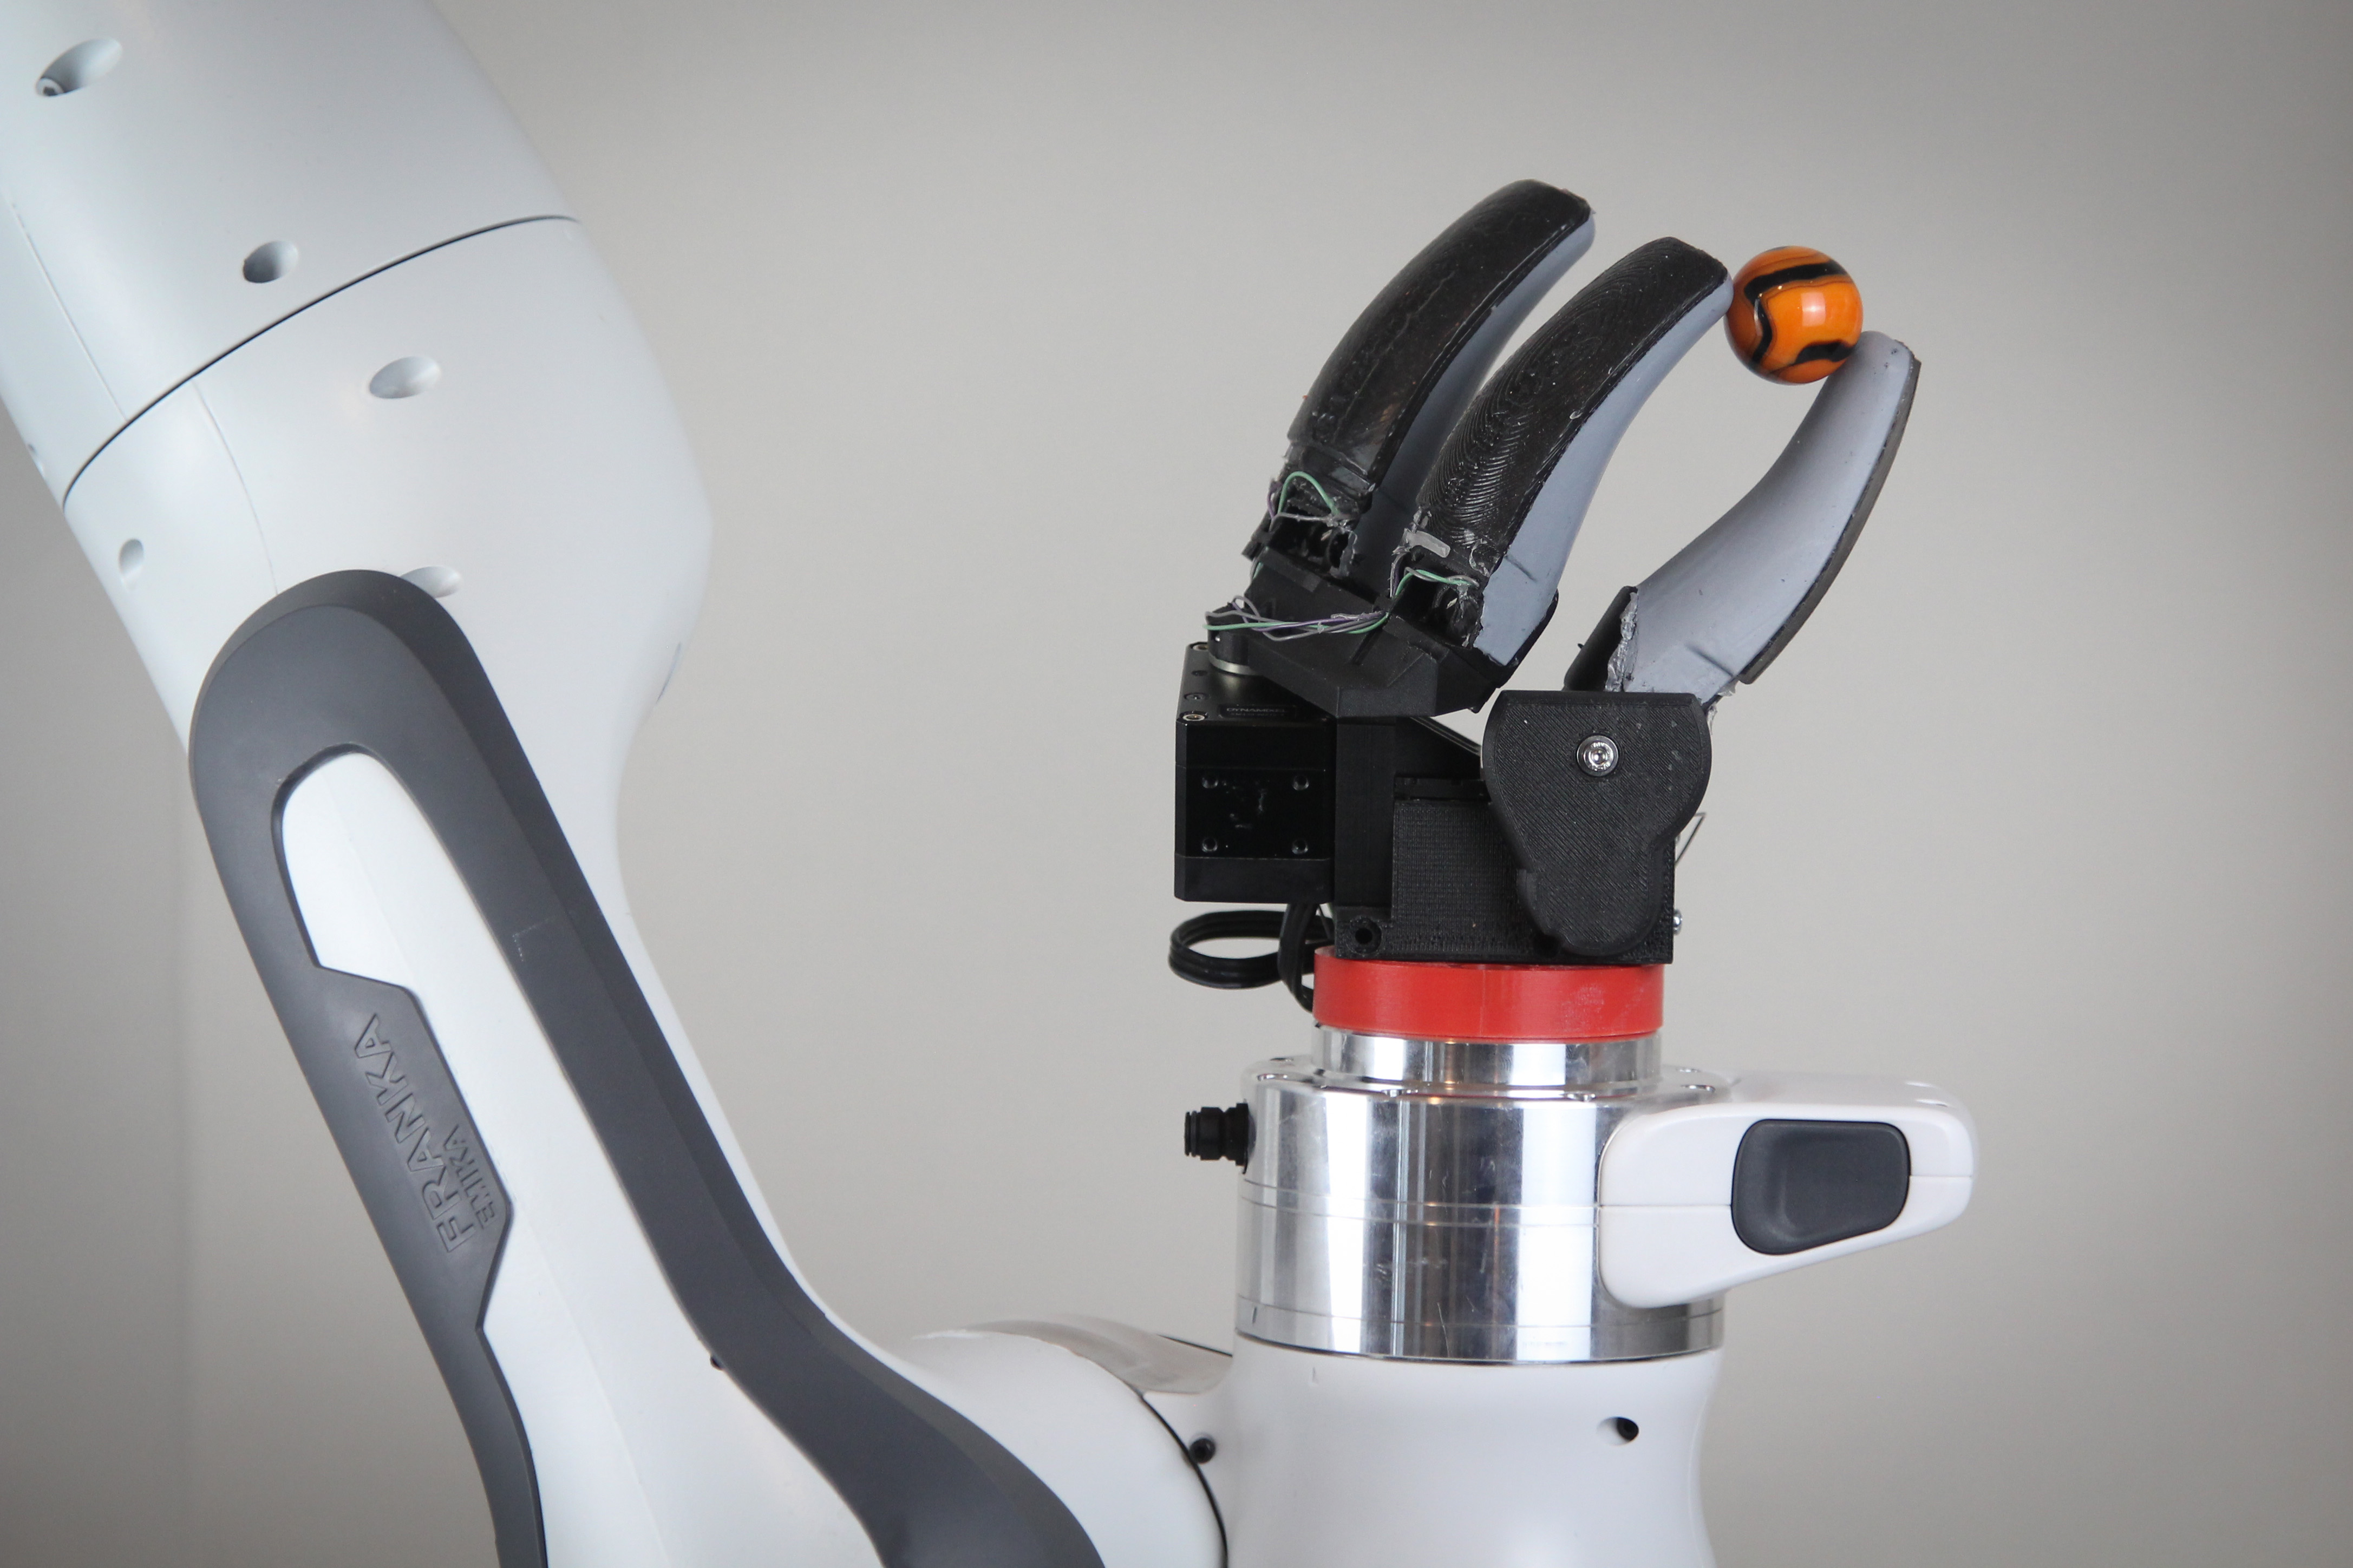 Finger-shaped sensor enables more dexterous robots, MIT News